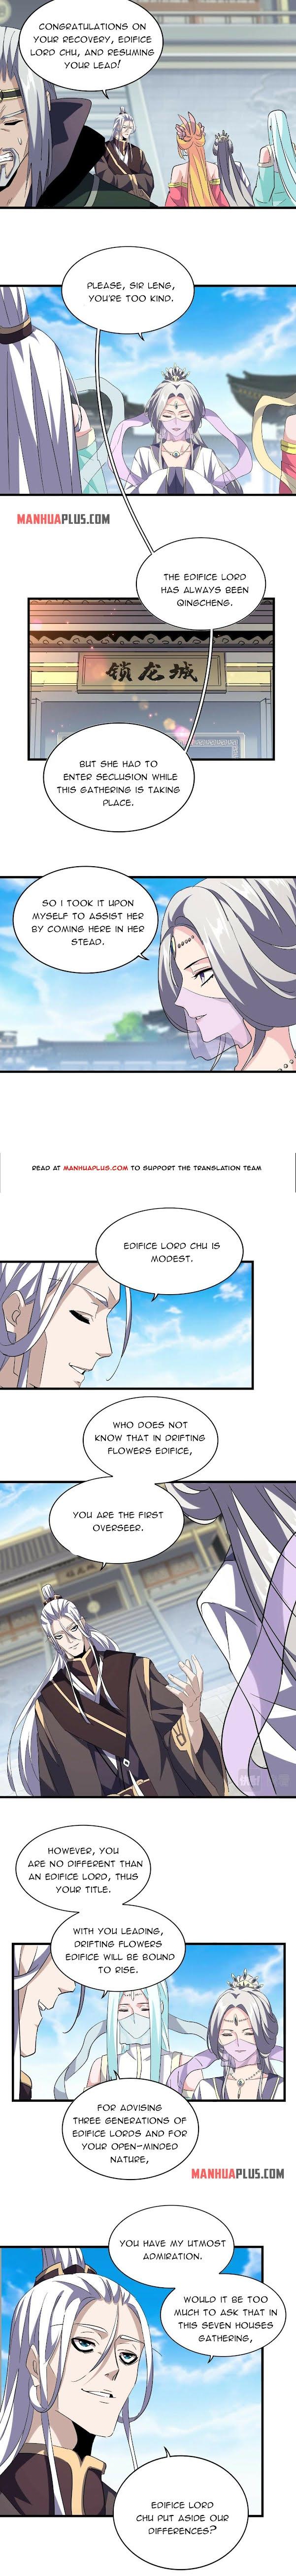 Magic Emperor Chapter 218 page 4 - Mangakakalot